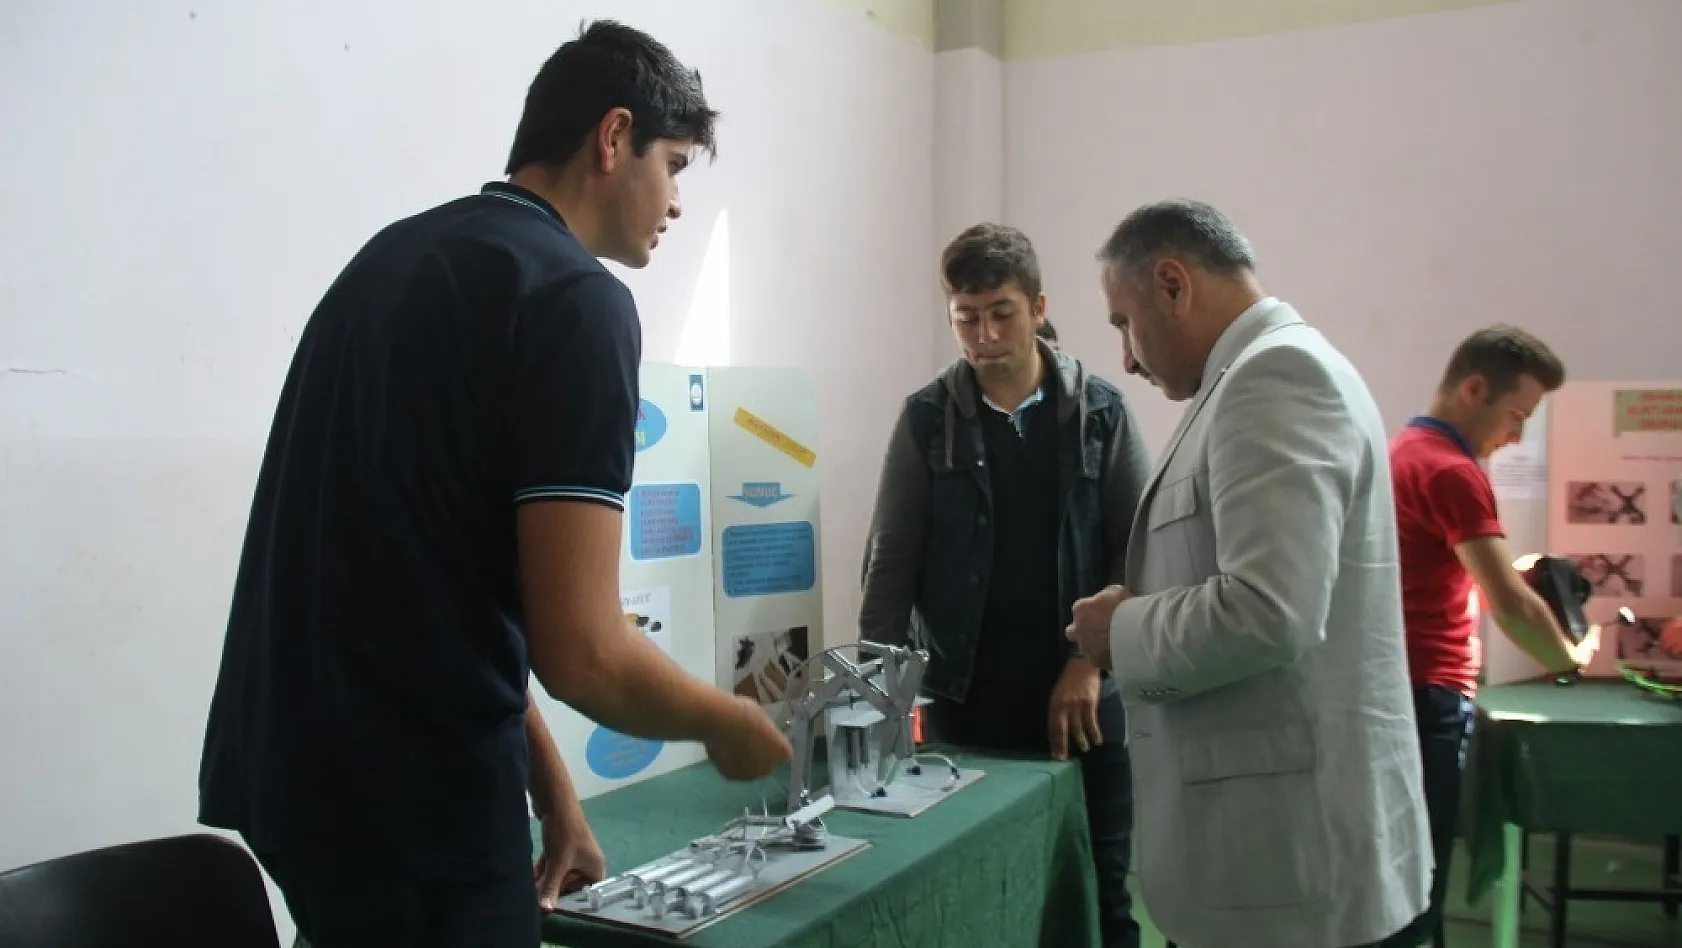 Elazığ'da öğrencilerin geliştirdiği projeler sergilendi 